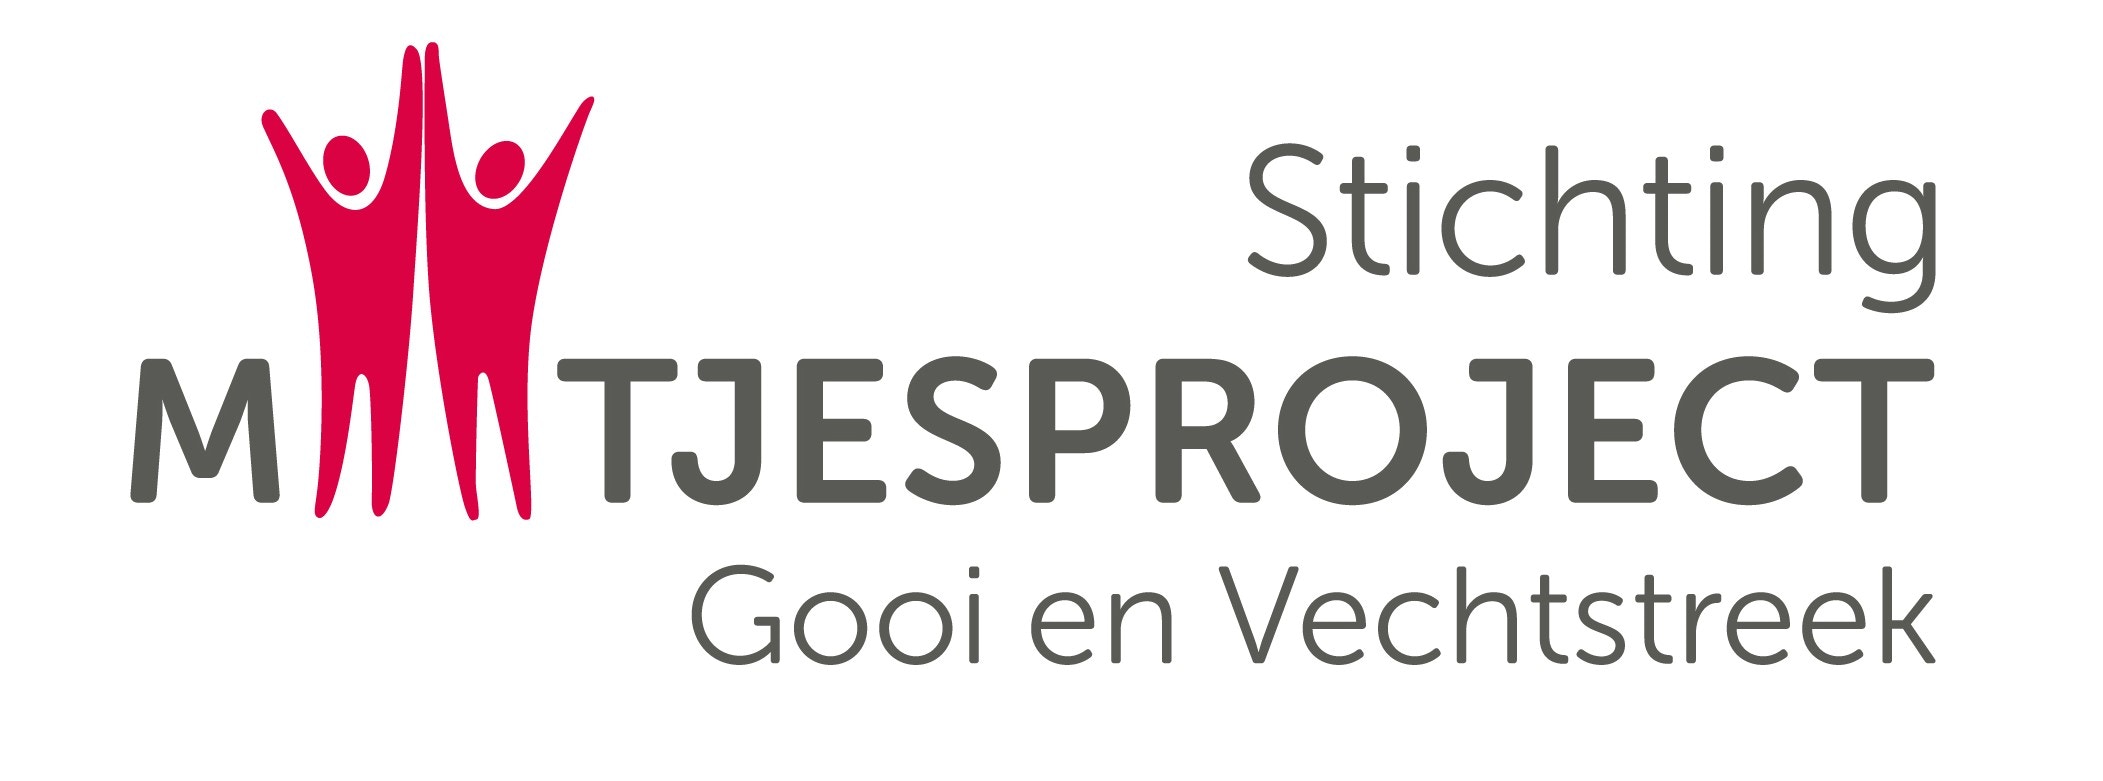 Stichting Maatjesproject Gooi en Vechtstreek